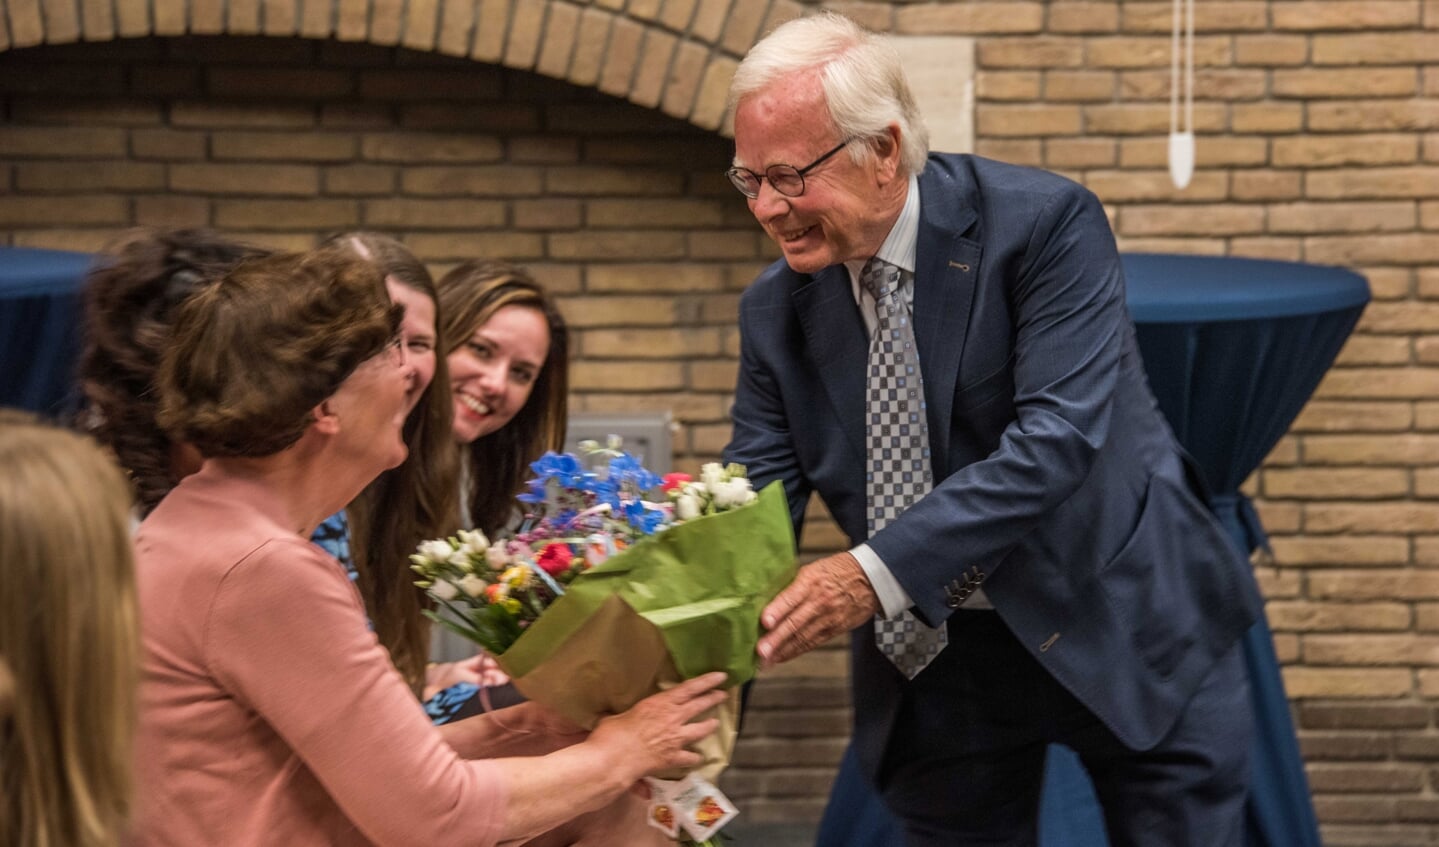 Scheidend wethouder Henk Kielman geeft de bloemen die hij krijgt aan zijn echtgenote Liesbeth.